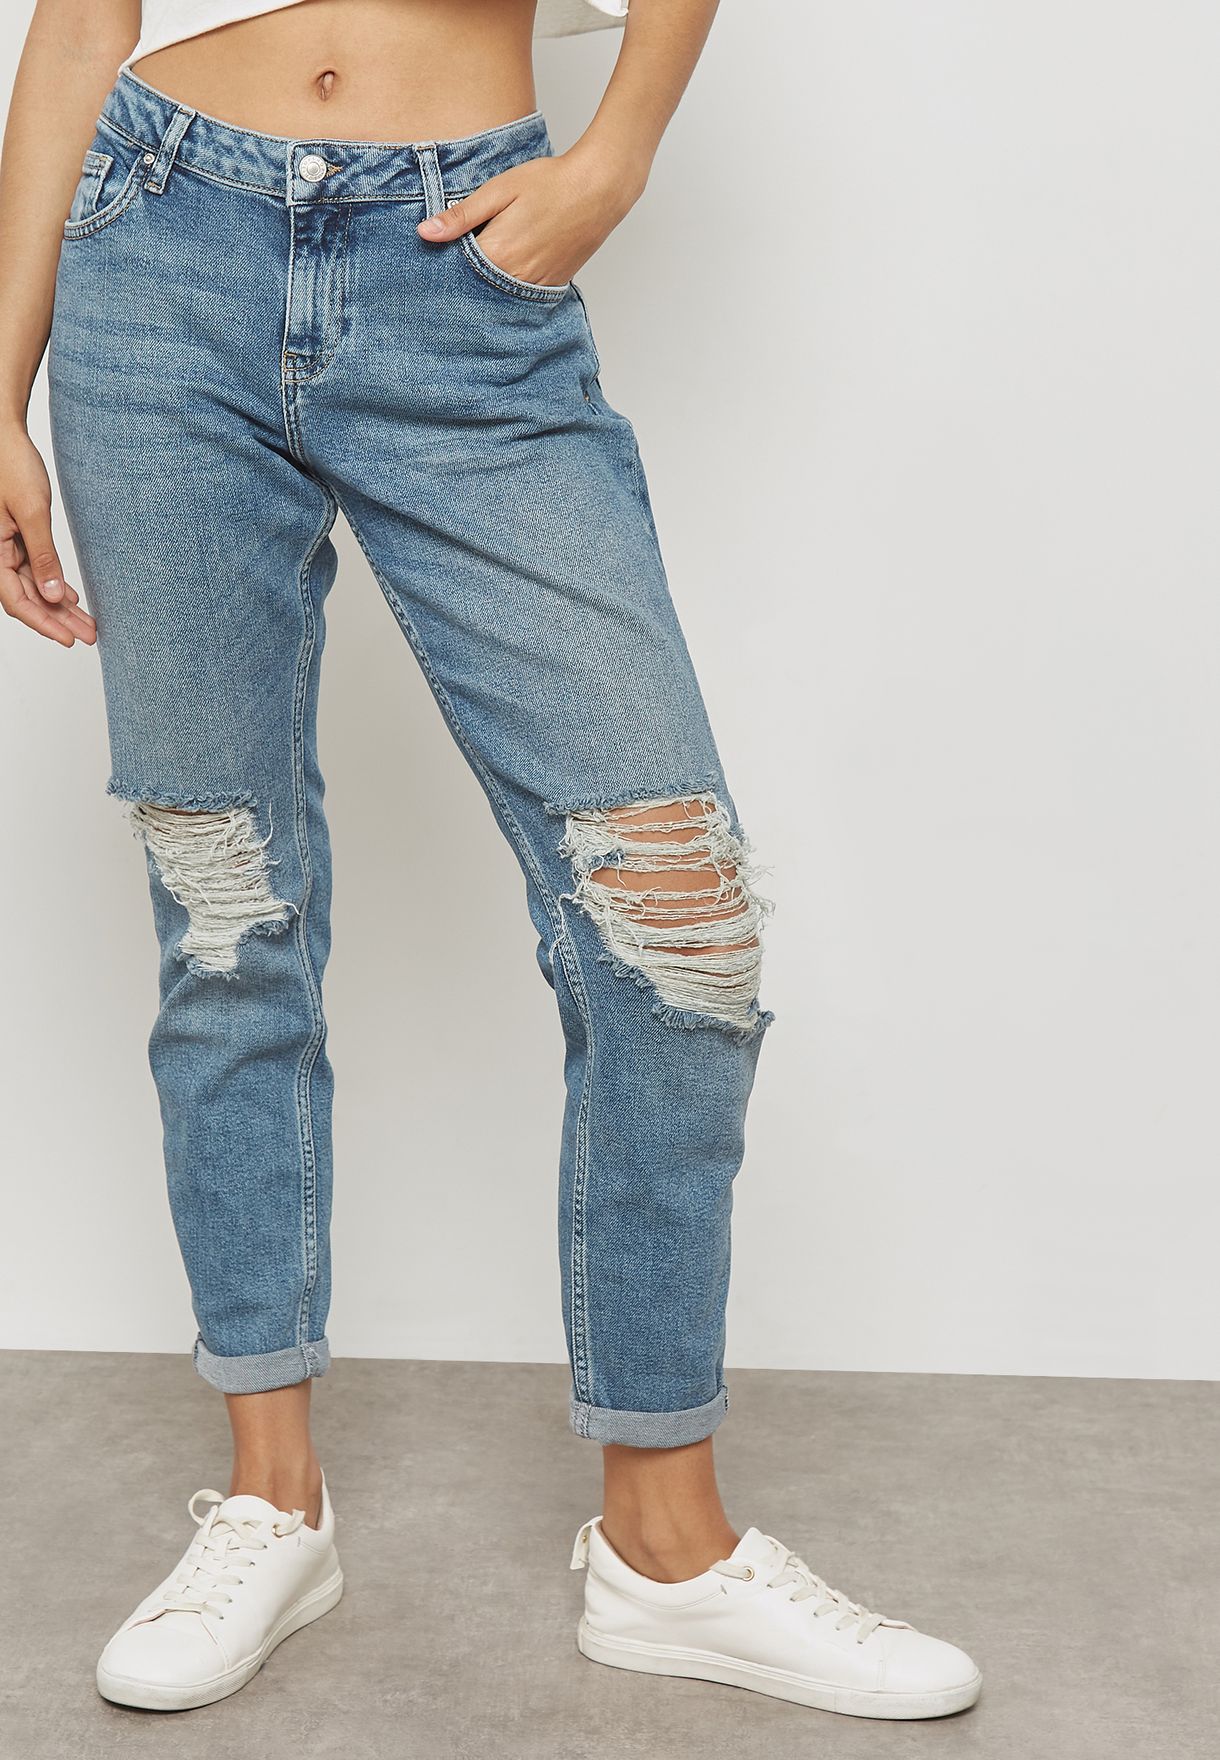 topshop lucas jeans